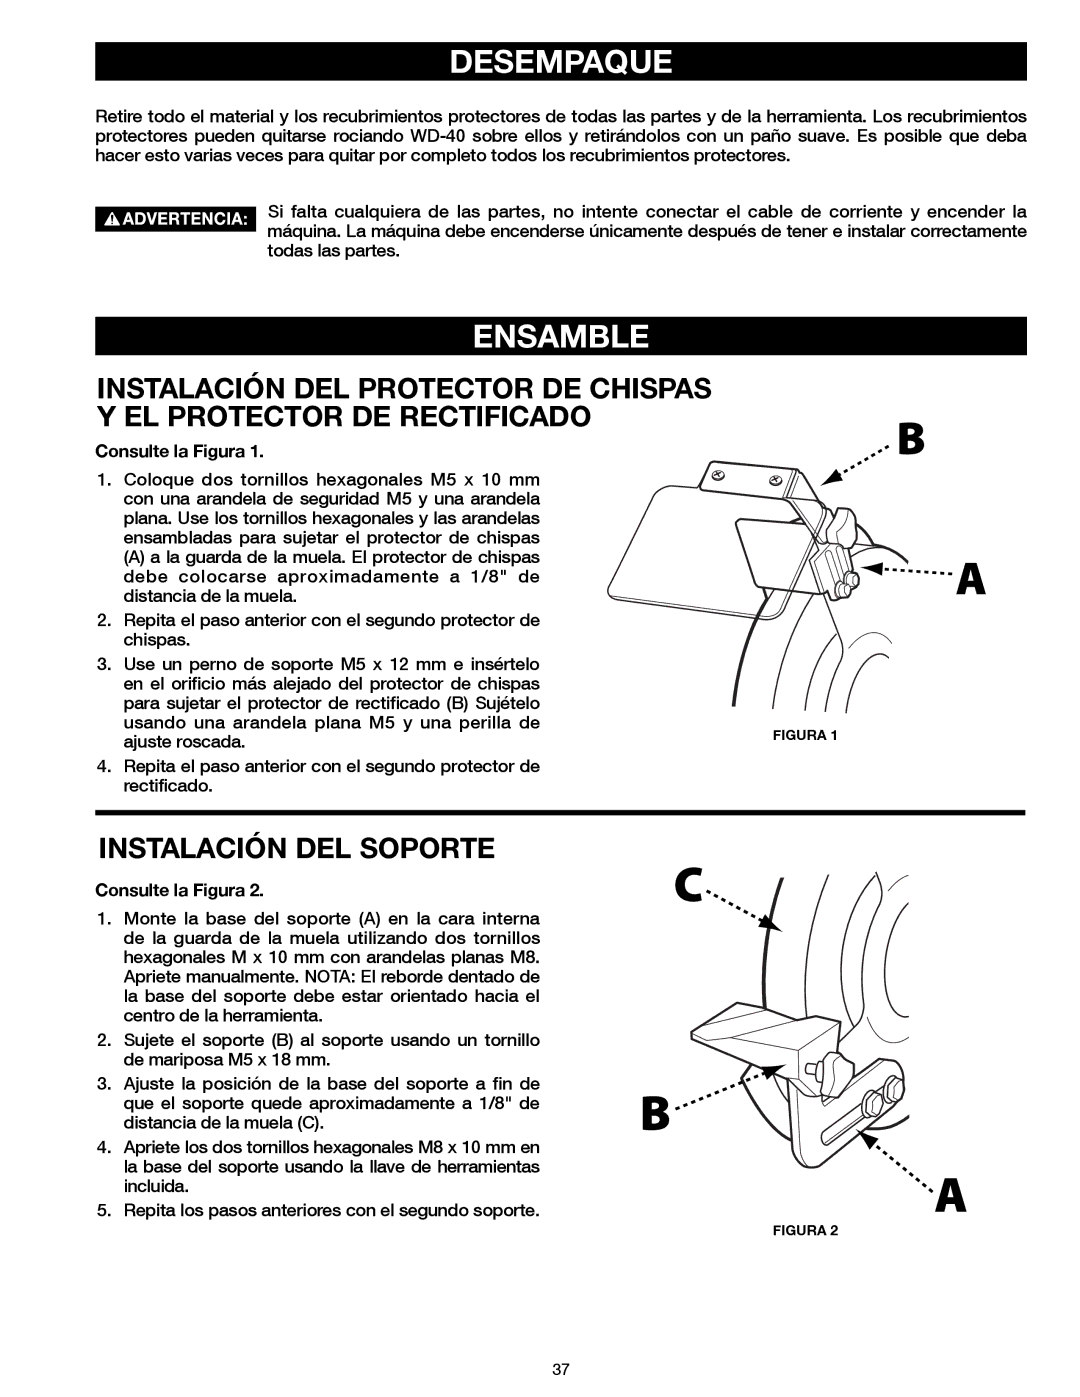 Delta 23-198, 23-199 instruction manual Ensamble, Instalación del soporte, Consulte la Figura 